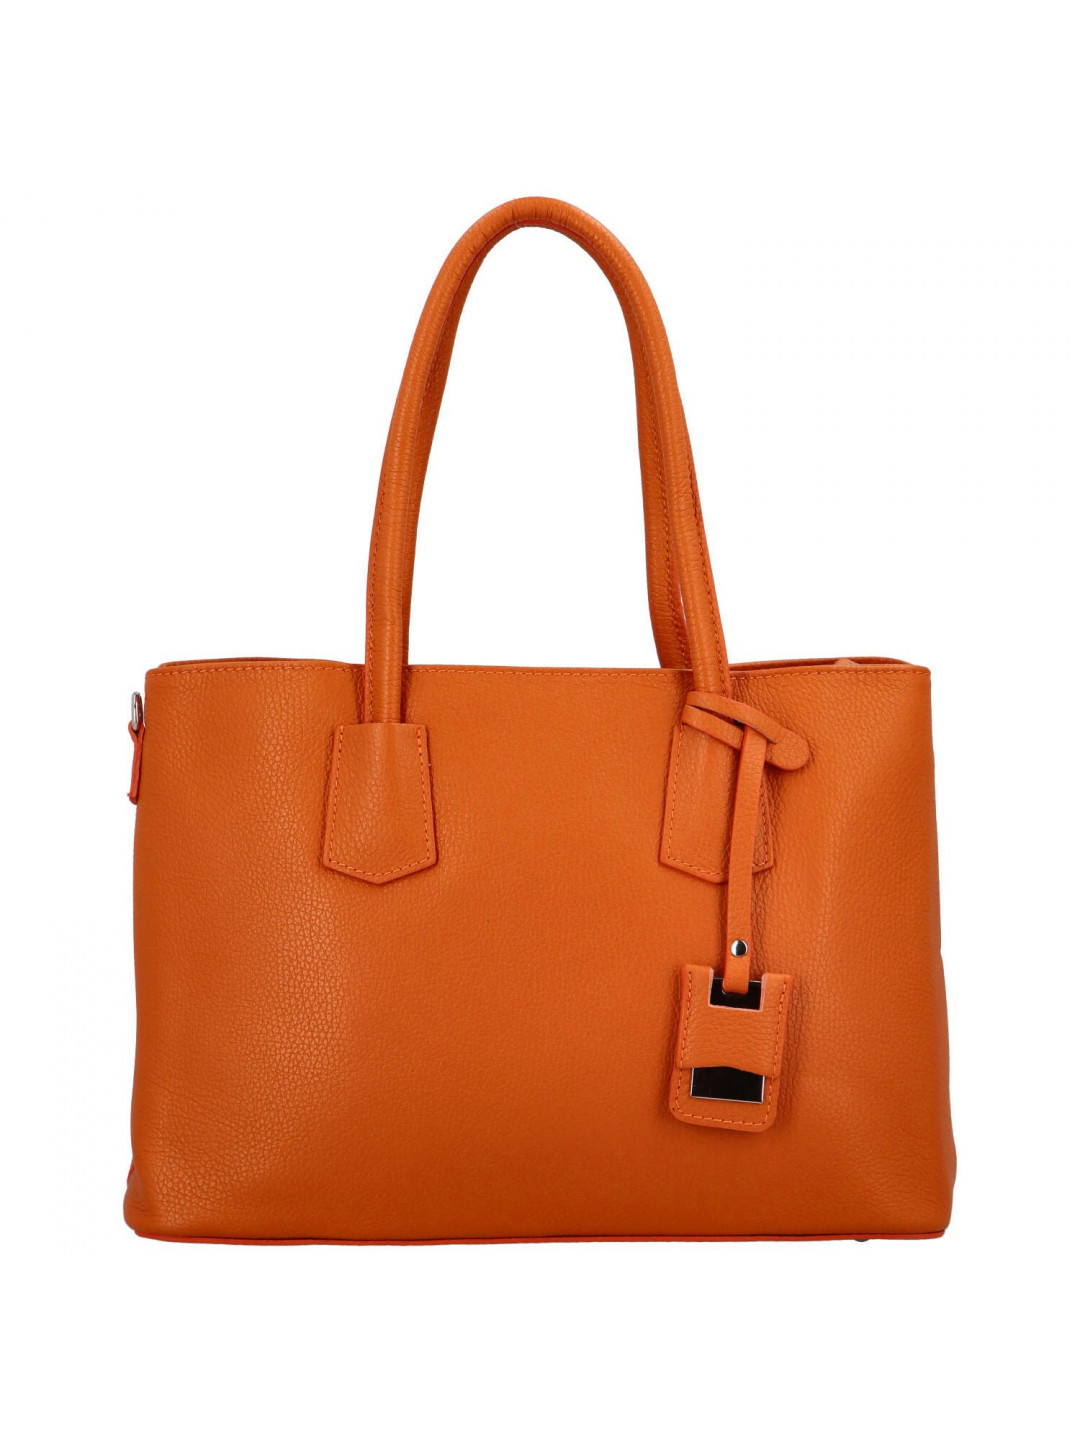 Dámská kožená kabelka přes rameno oranžová – Delami Surevy